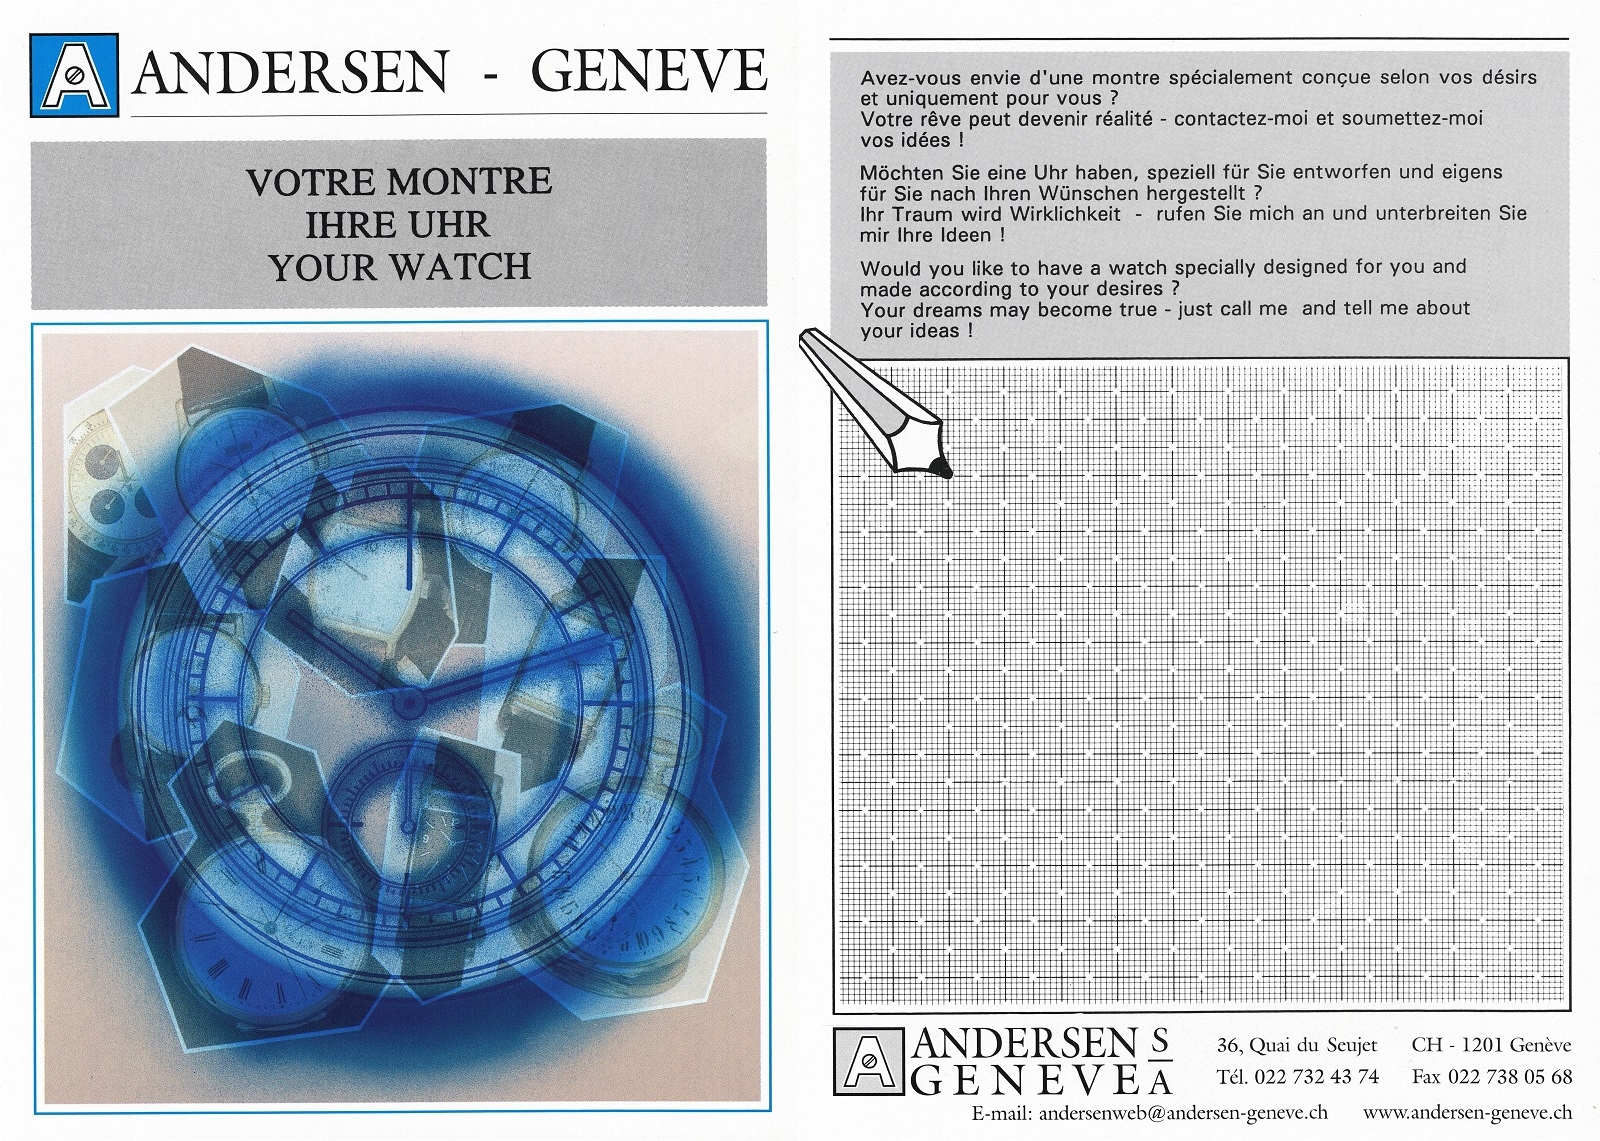 Tờ rơi quảng cáo gợi ý làm đồng hồ của Andersen Geneve